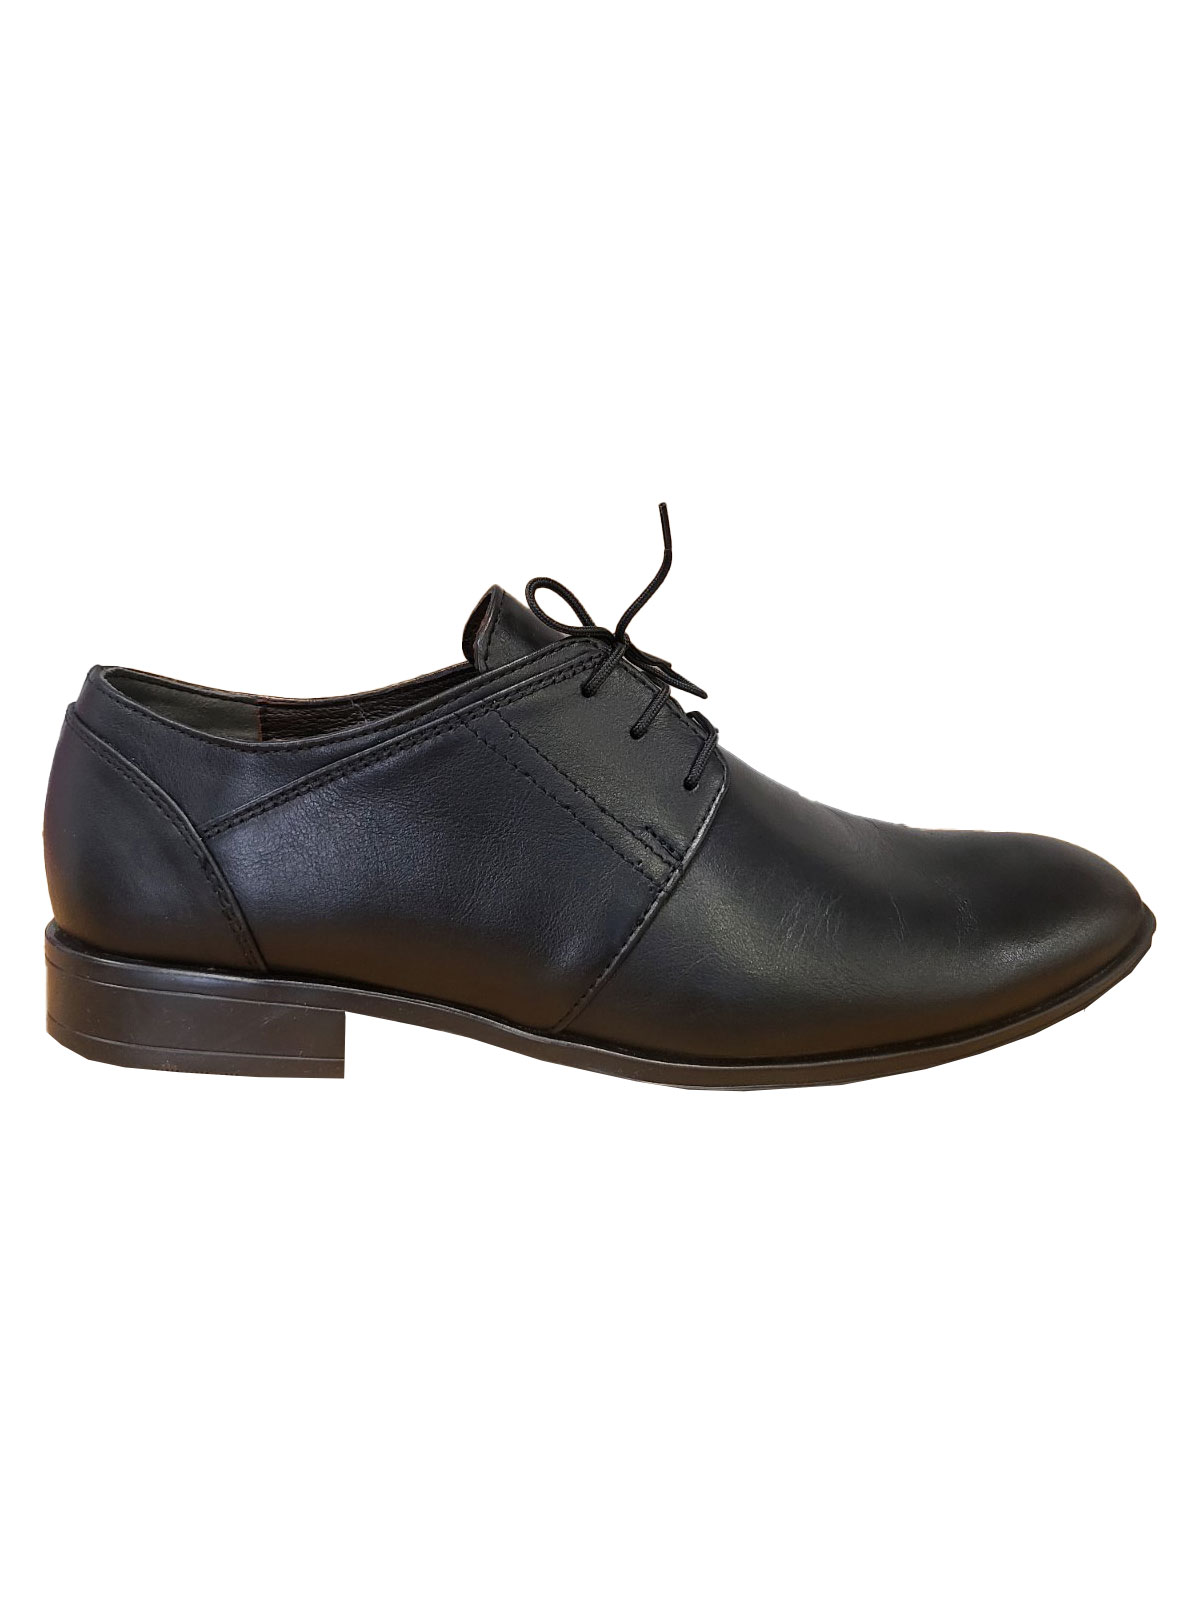 Ανδρικά κλασικά παπούτσια σε μαύρο χρώμα - 81106 - € 83.24 img2